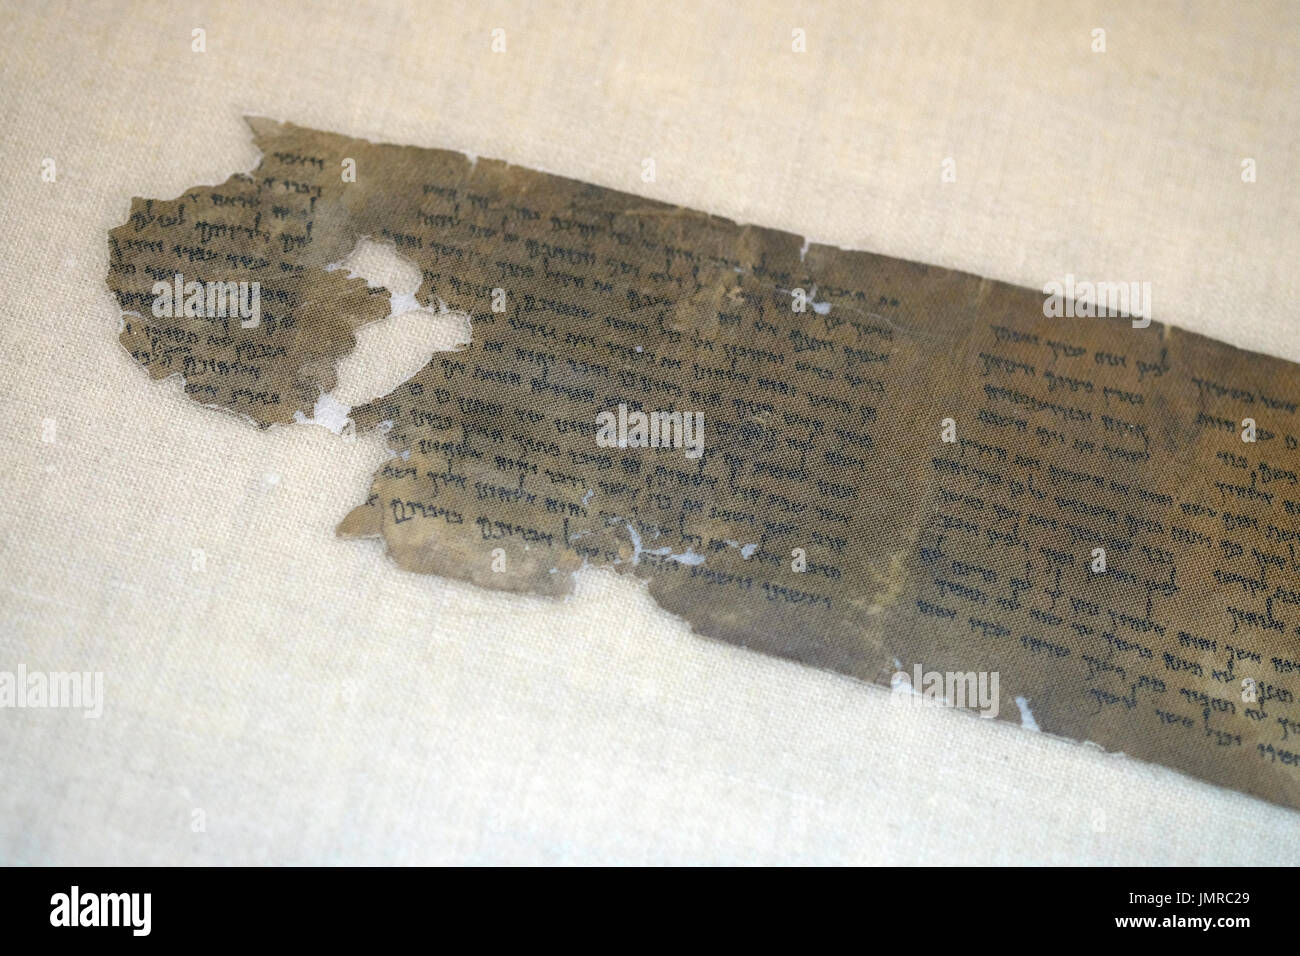 Un filet transparent couvre un fragment de Mer Morte deutéronome livre écrit en hébreu trouvés à Qumran grottes dans le laboratoire de préservation de l'Autorité des antiquités d'Israël au Musée d'Israël à Jérusalem Israël Banque D'Images